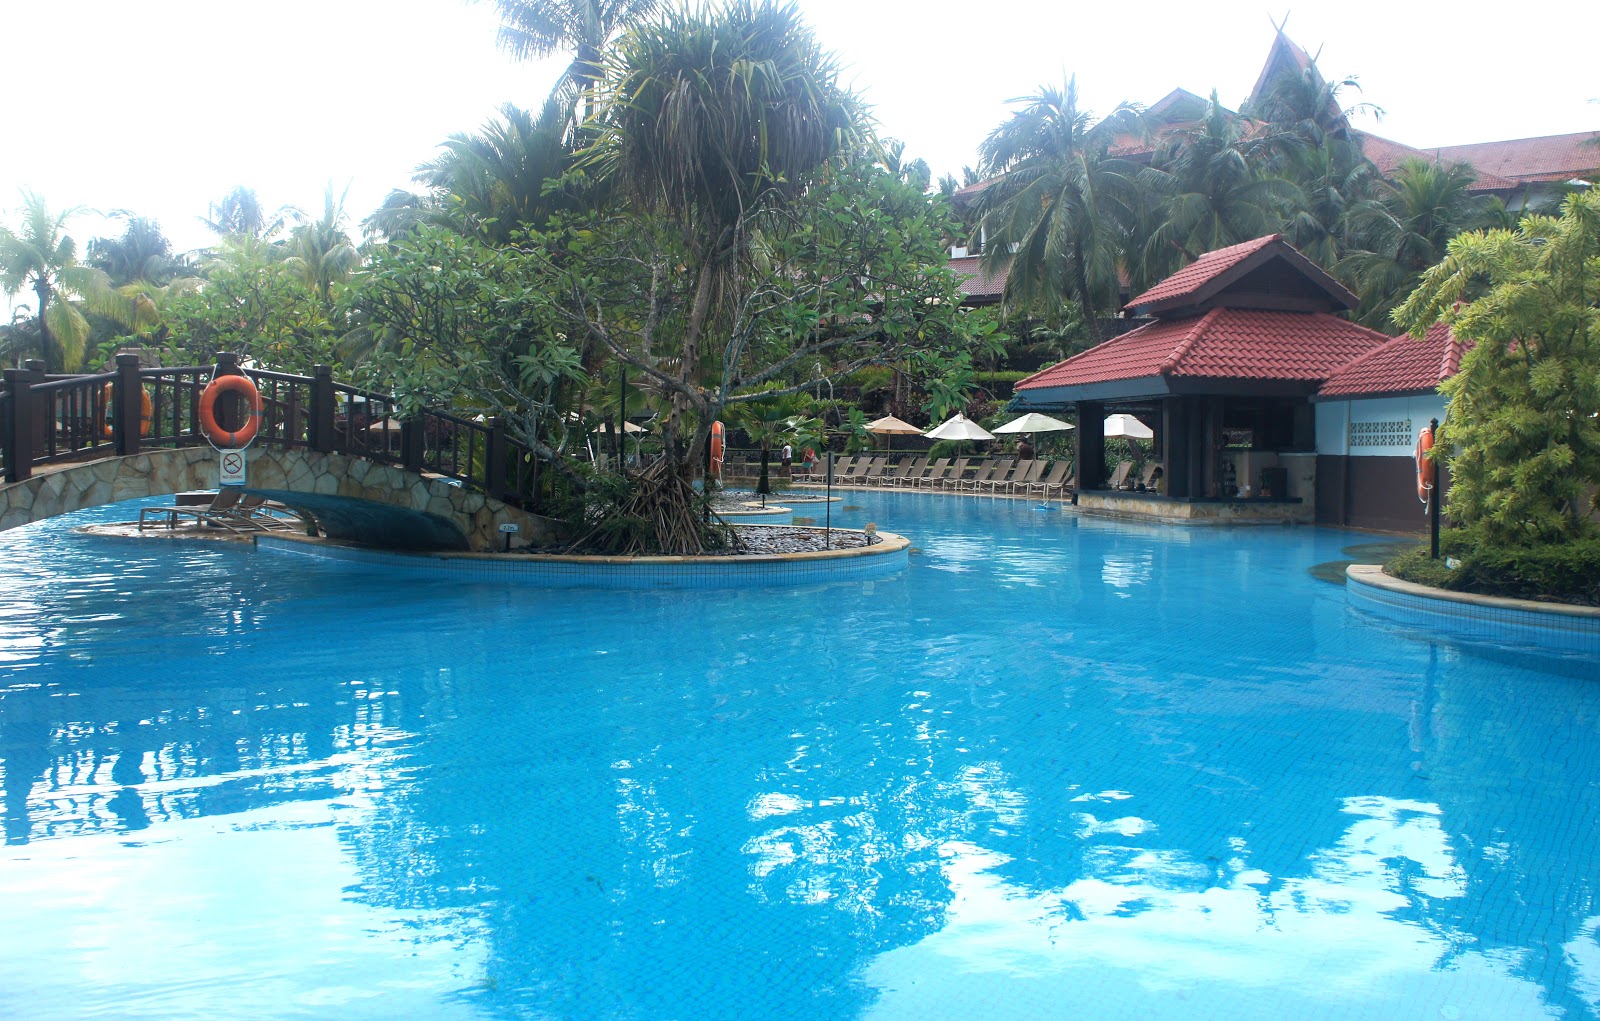 Bintan Lagoon Resort Indonesia: Where To Stay in Bintan, Indonesia